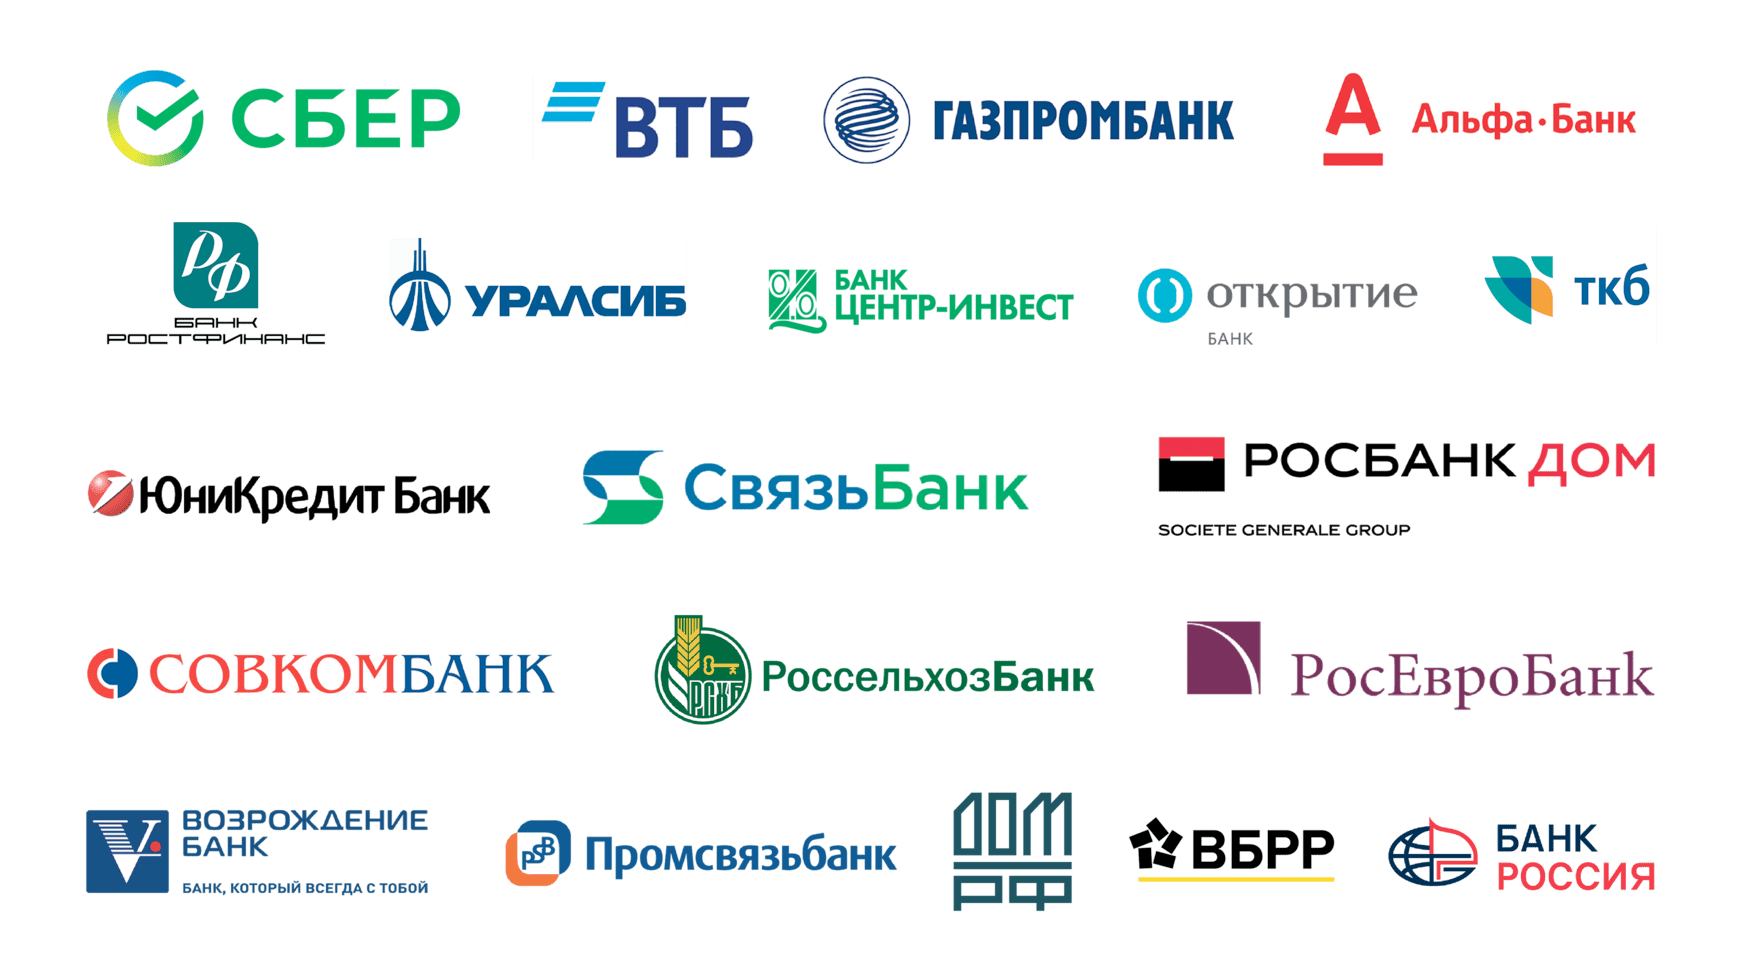 Второй банк в рф. Банки партнеры. Наши банки партнеры. Банк партнер. Партнеры банка Россия.